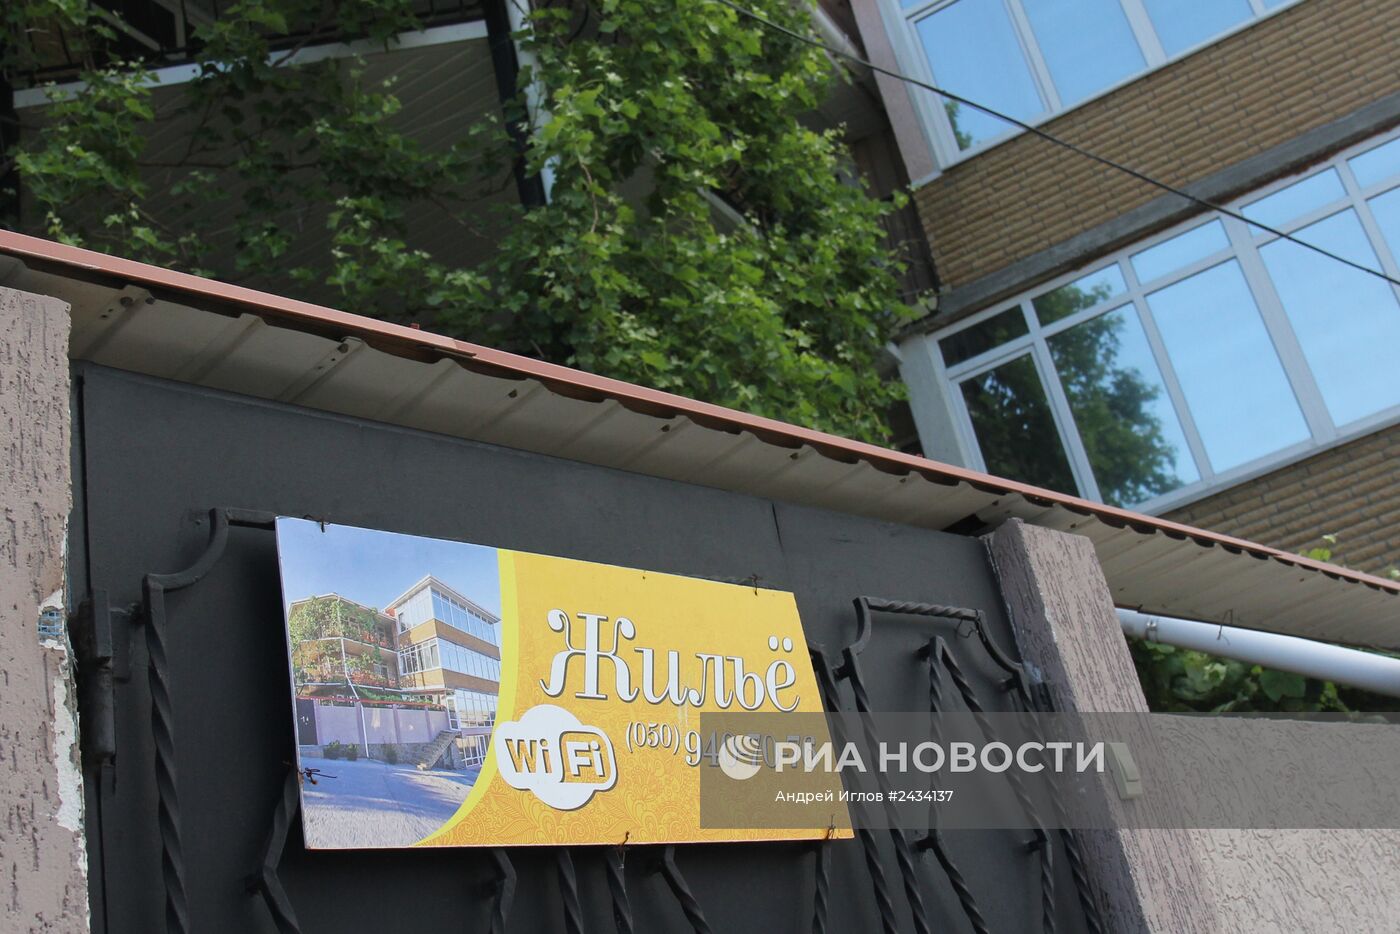 Объявления о сдаче жилья в поселках на южном берегу Крыма